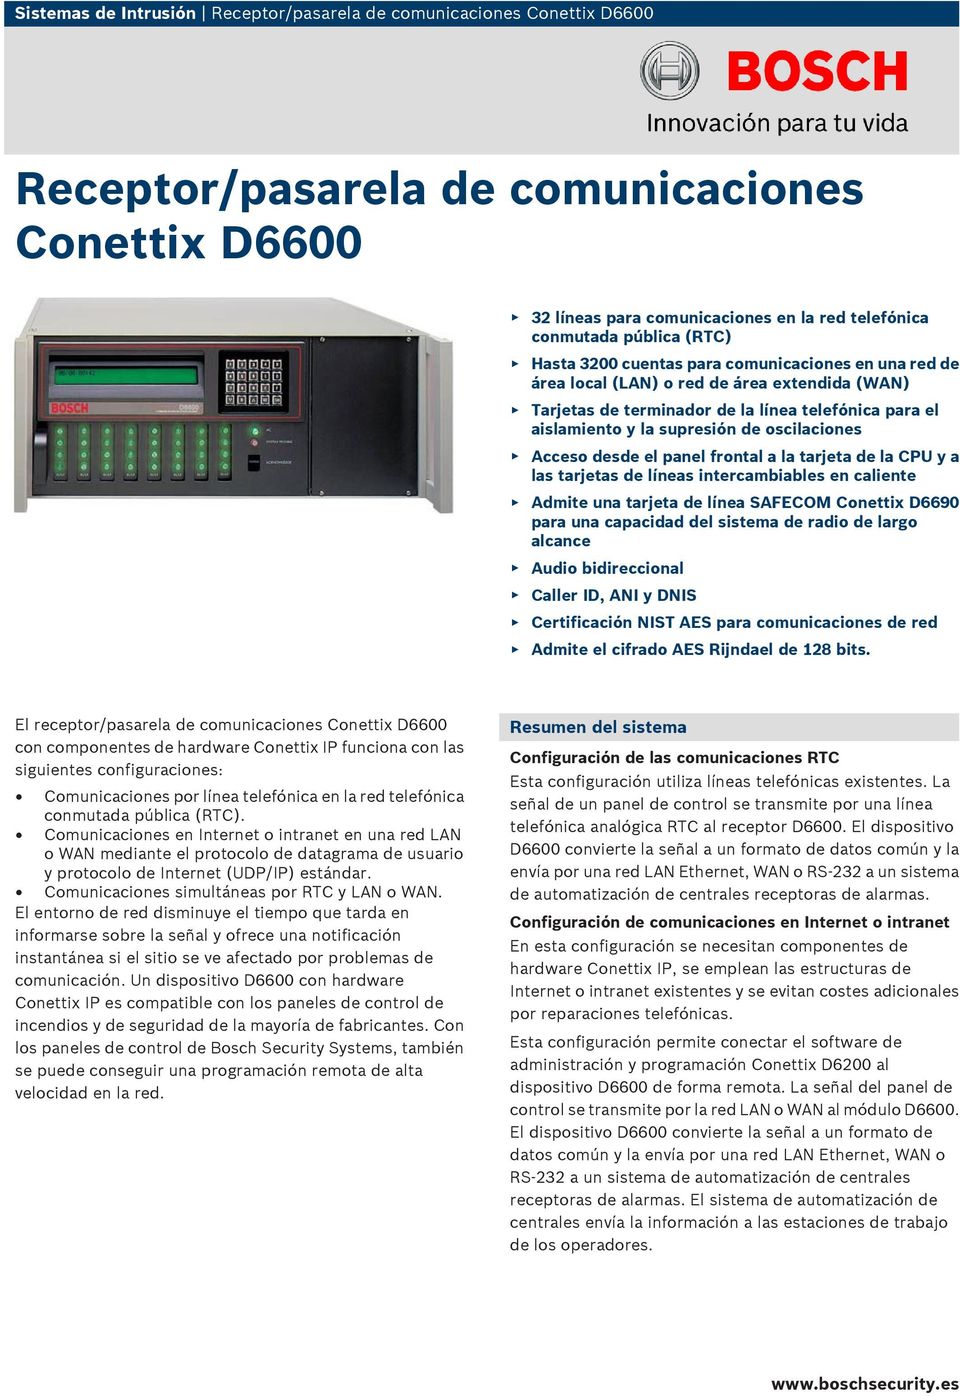 Acceso desde el panel frontal a la tarjeta de la CPU y a las tarjetas de líneas intercambiables en caliente Admite una tarjeta de línea SAFECOM Conettix D6690 para una capacidad del sistema de radio